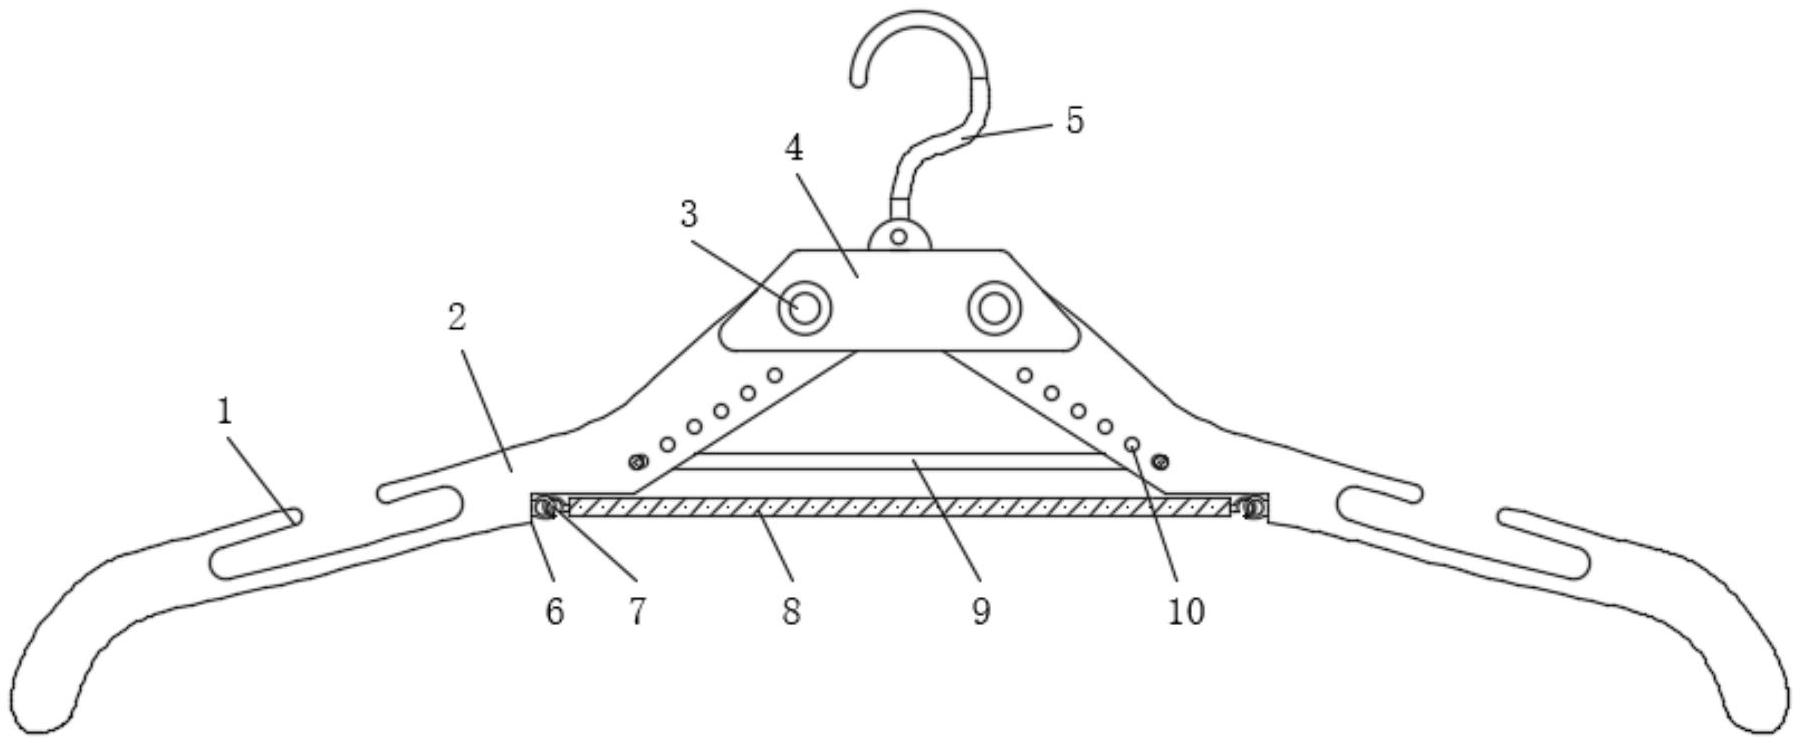 一种折叠式衣架专利图